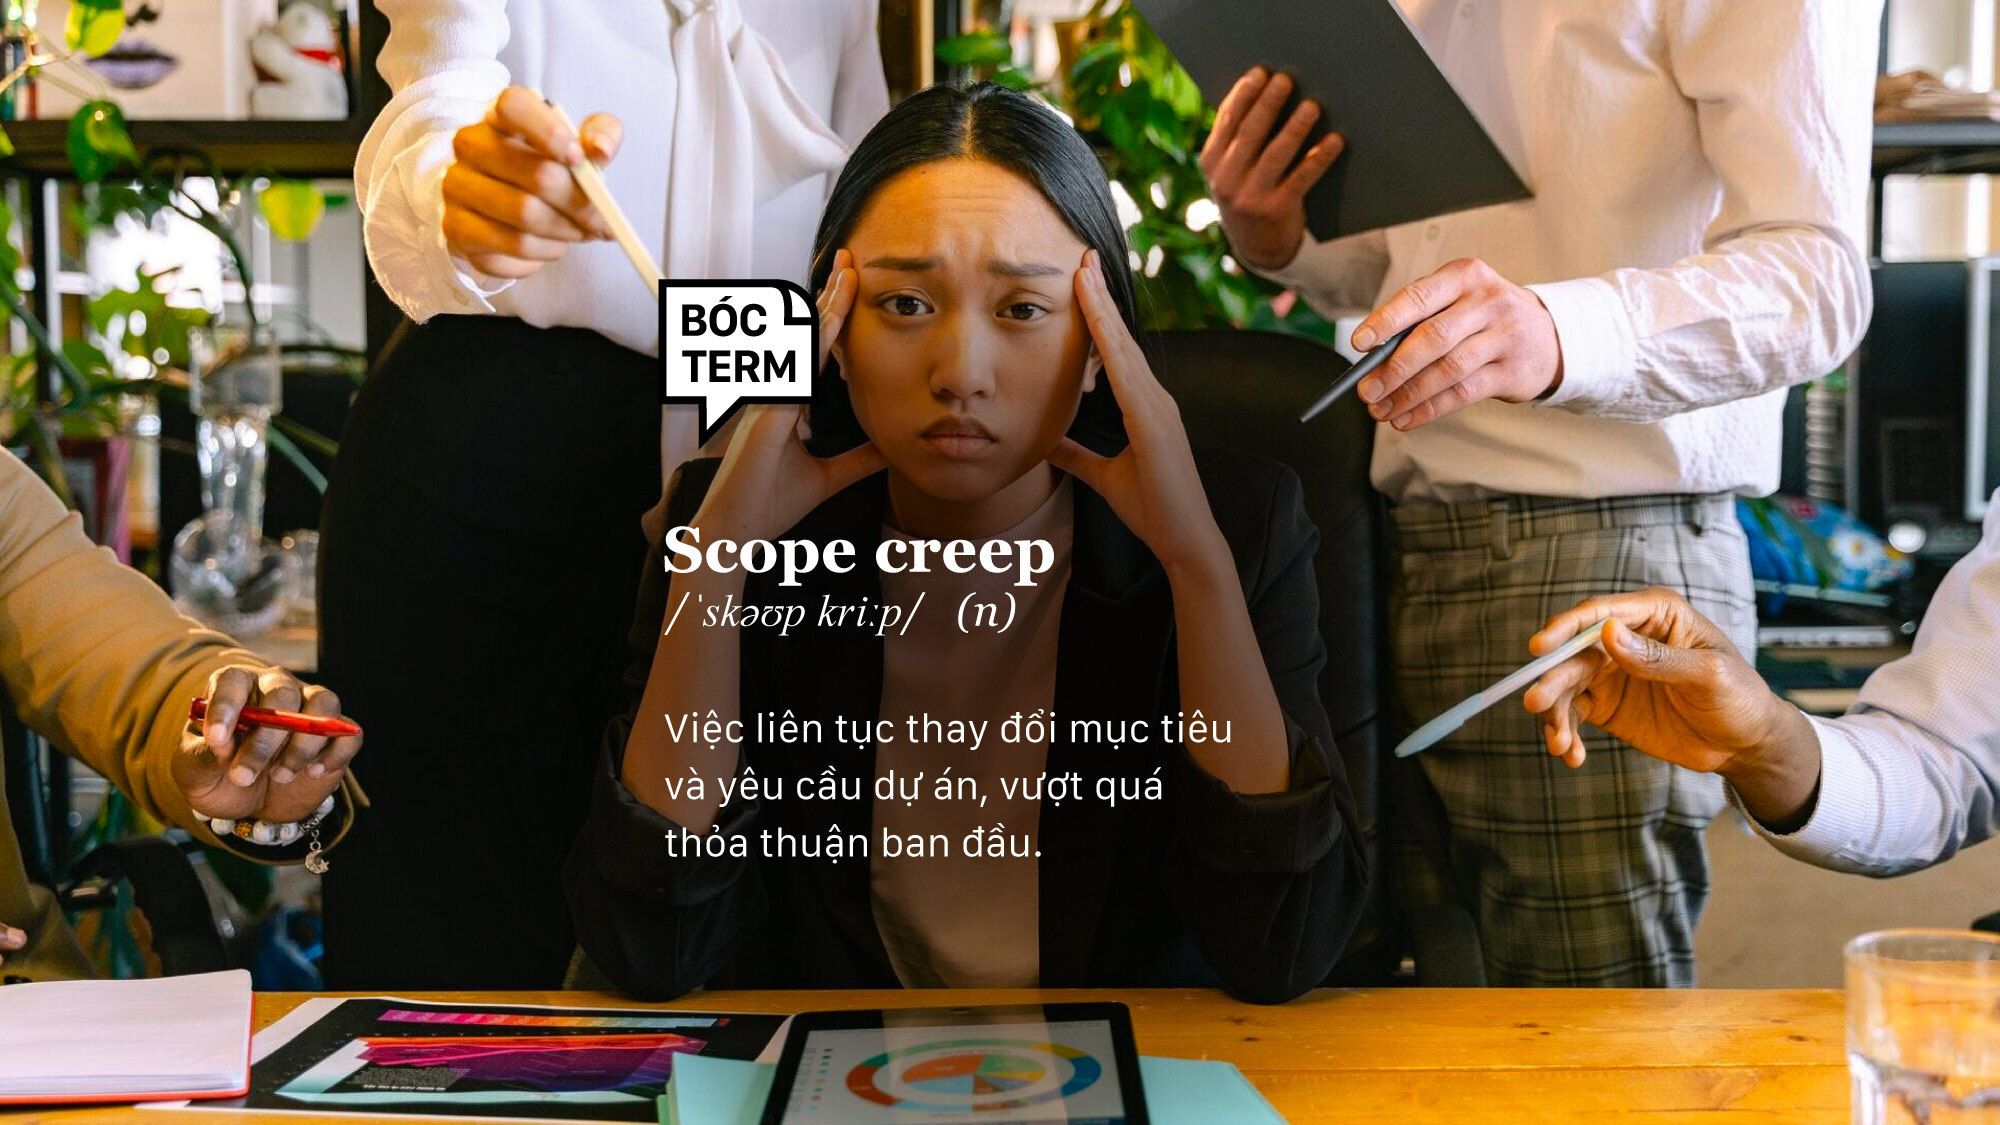 Scope creep - Cơn ác mộng "Ủa em?" và hiệu ứng quả cầu tuyết (snowball)